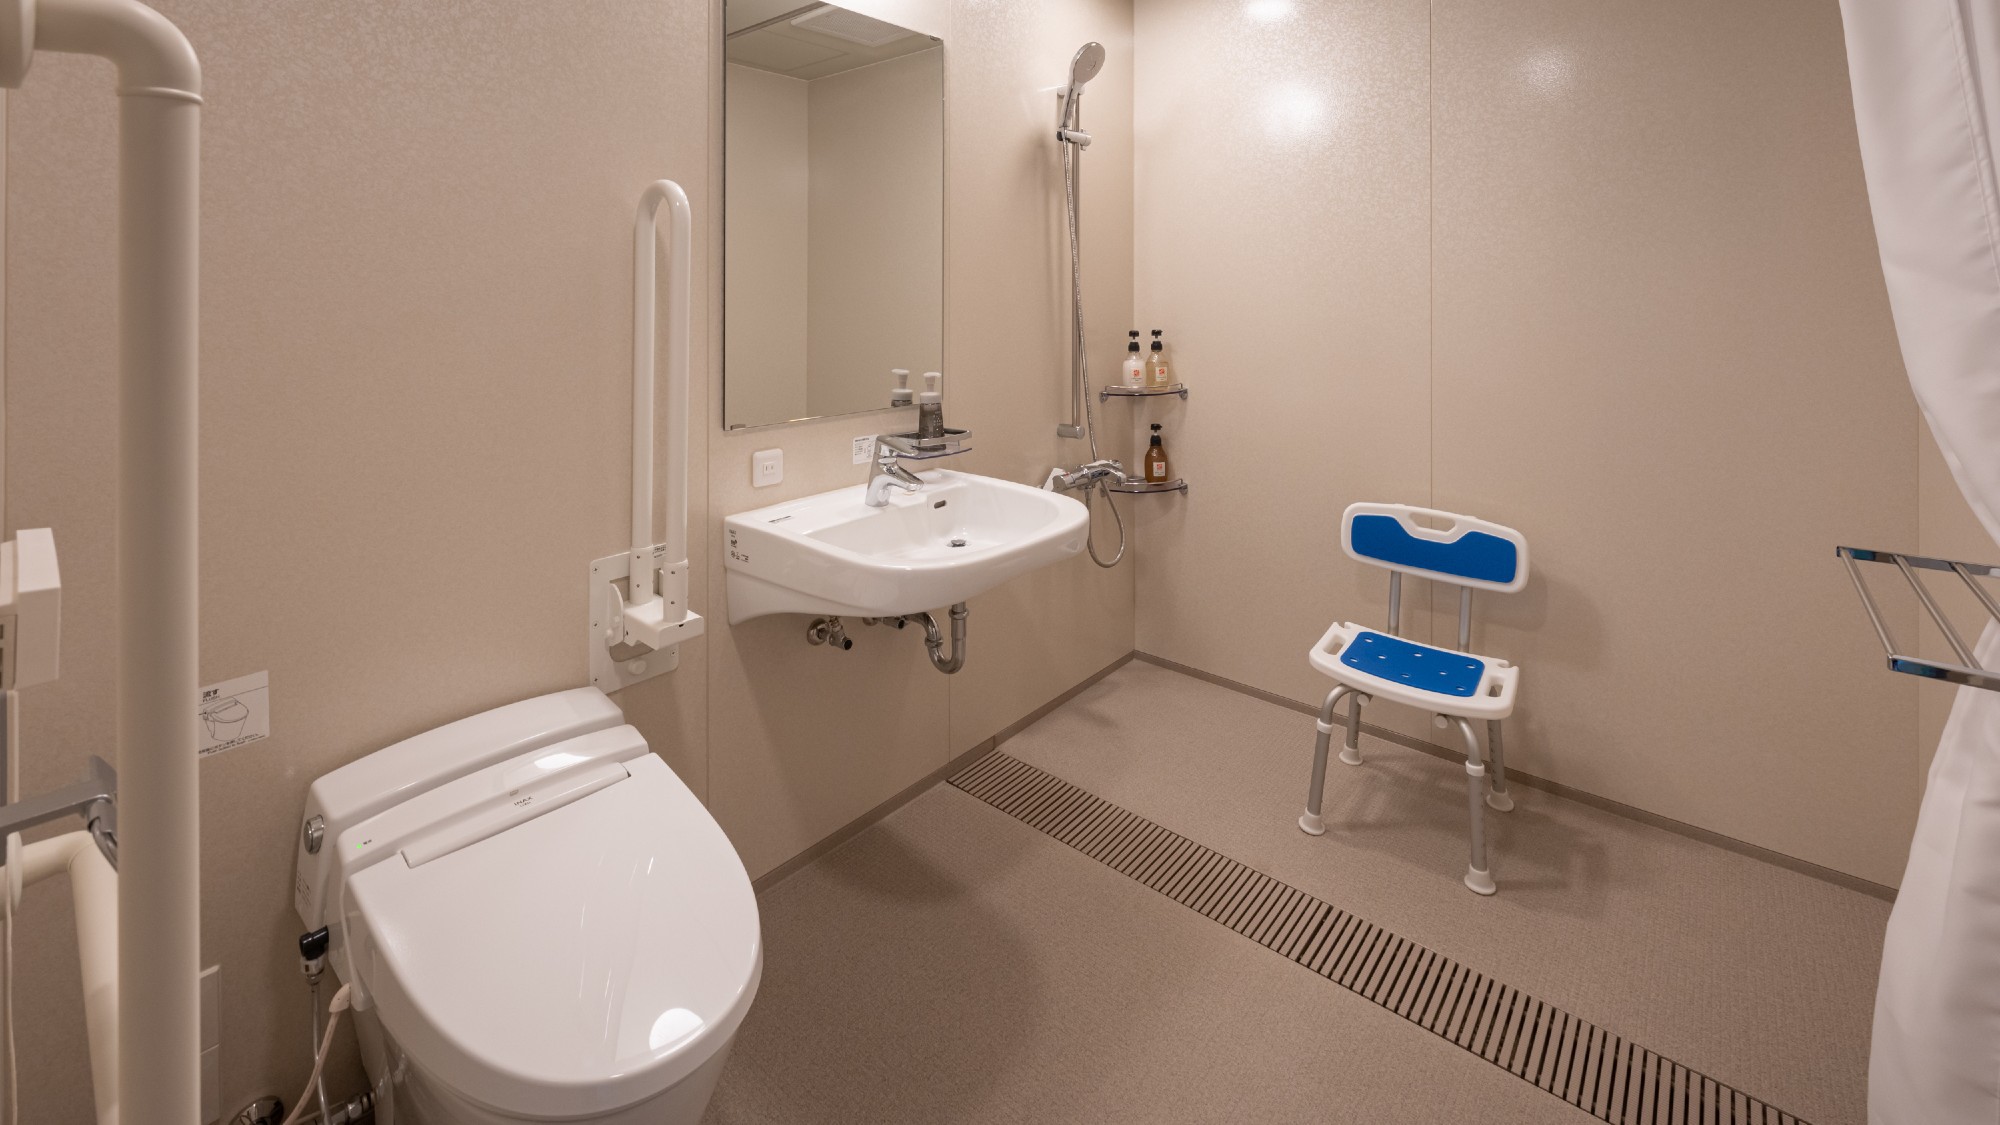 【ユニバーサルツインルーム】お部屋からお風呂場まで車椅子のまま移動が可能です。